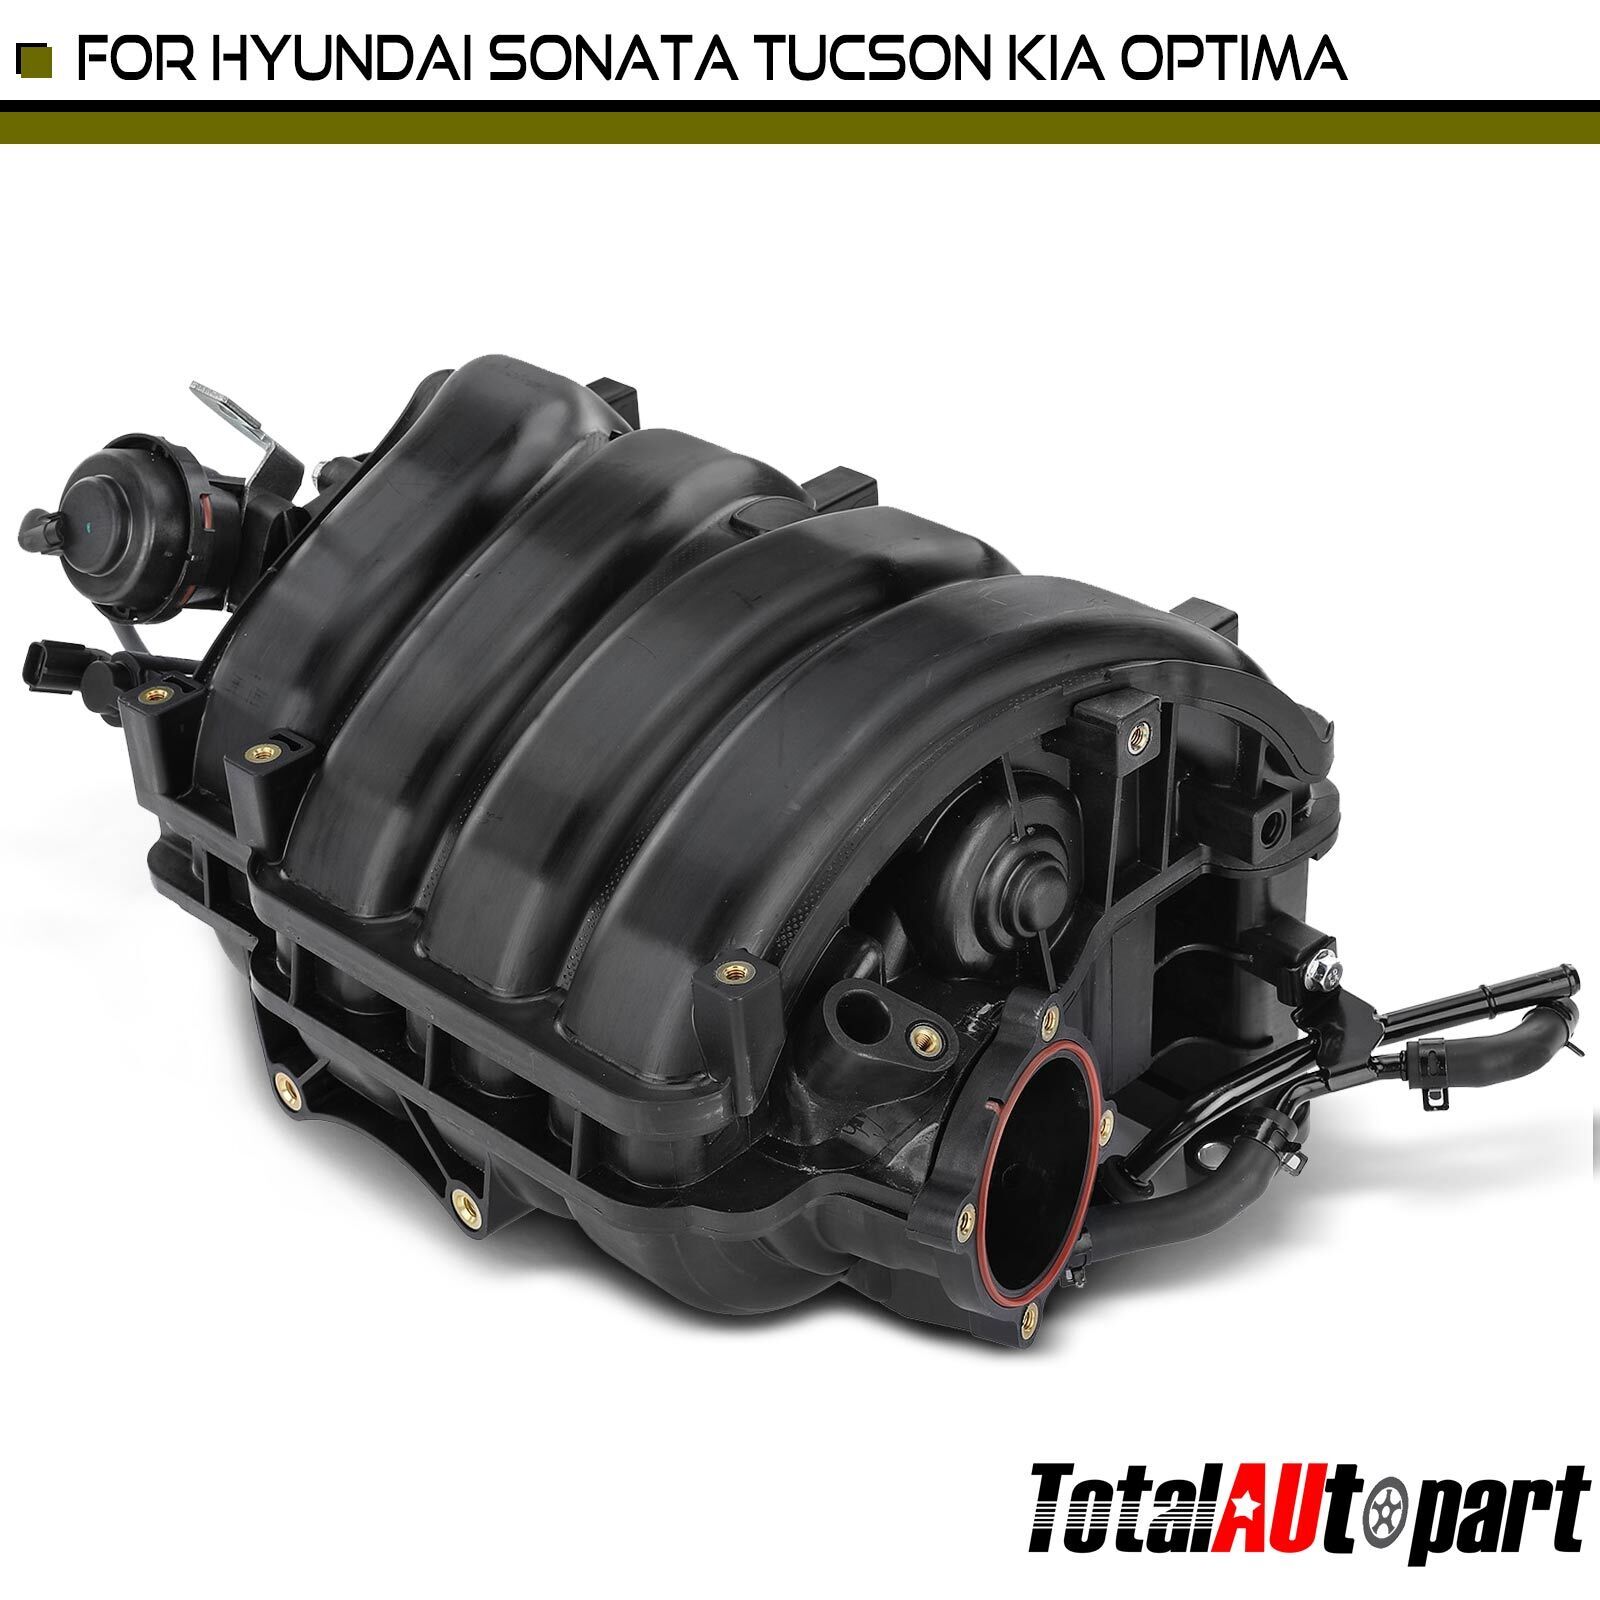 Intake Manifold w/ Gasket for Hyundai Sonata 11-14 Kia Optima Sorento Sportage